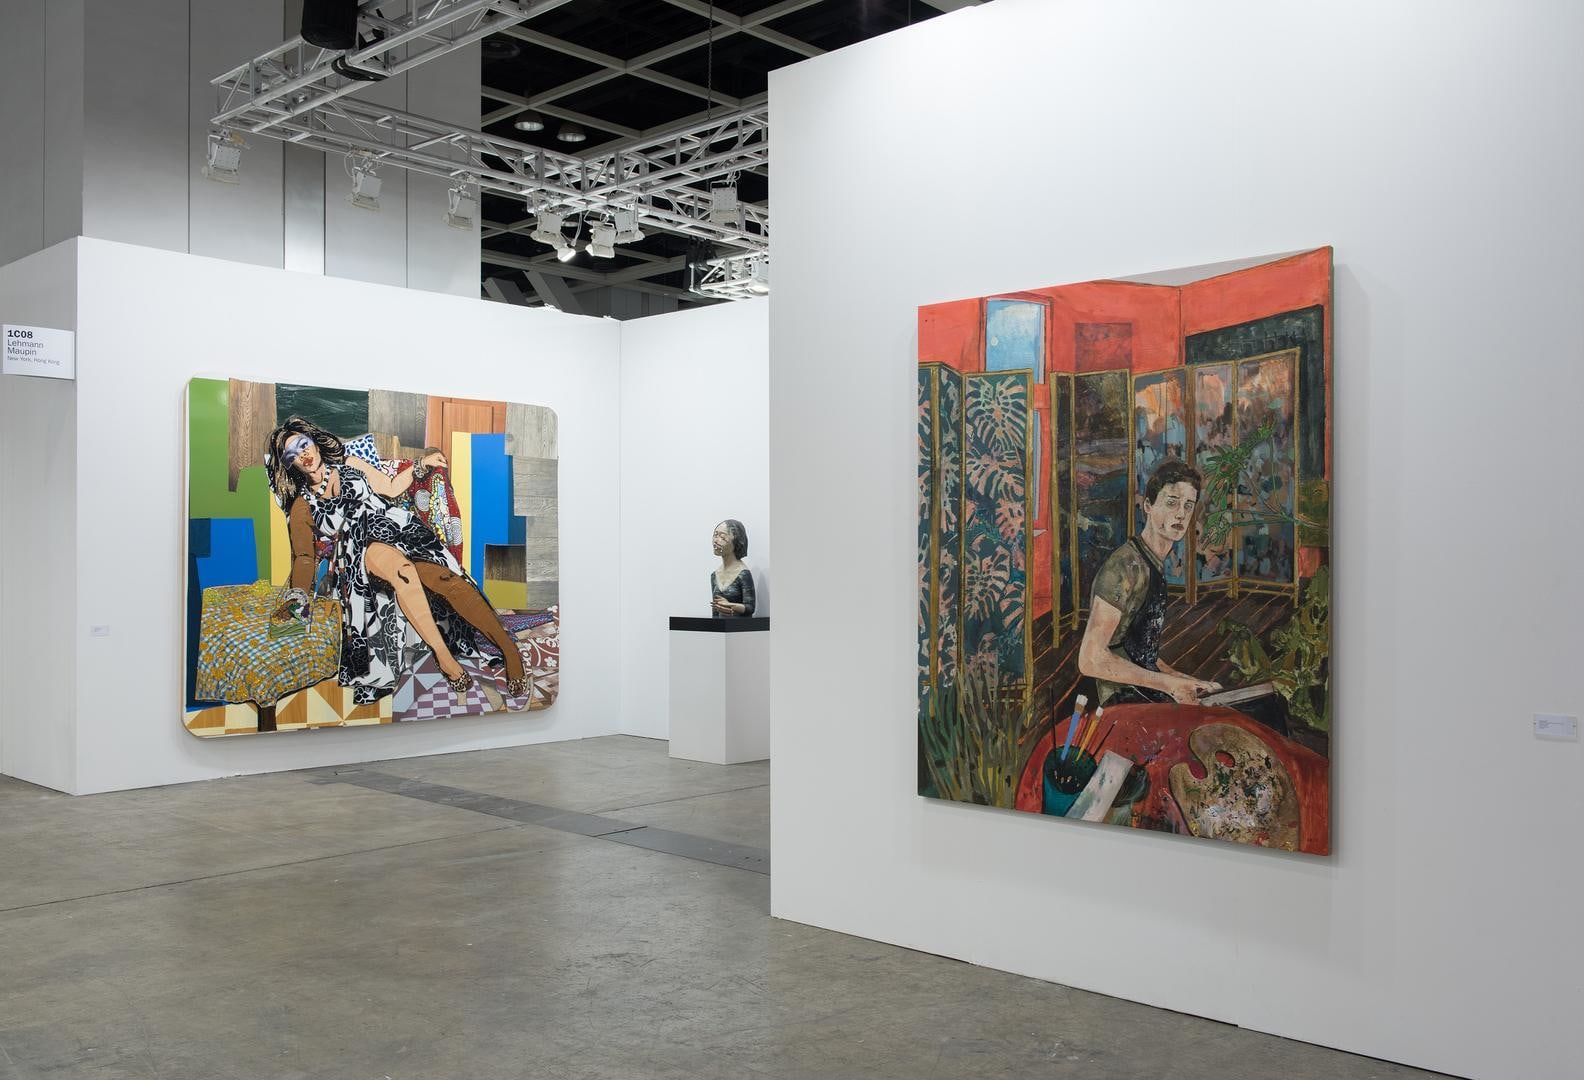  Installation view, Booth 1C08, Art Basel Hong Kong 2015&nbsp;